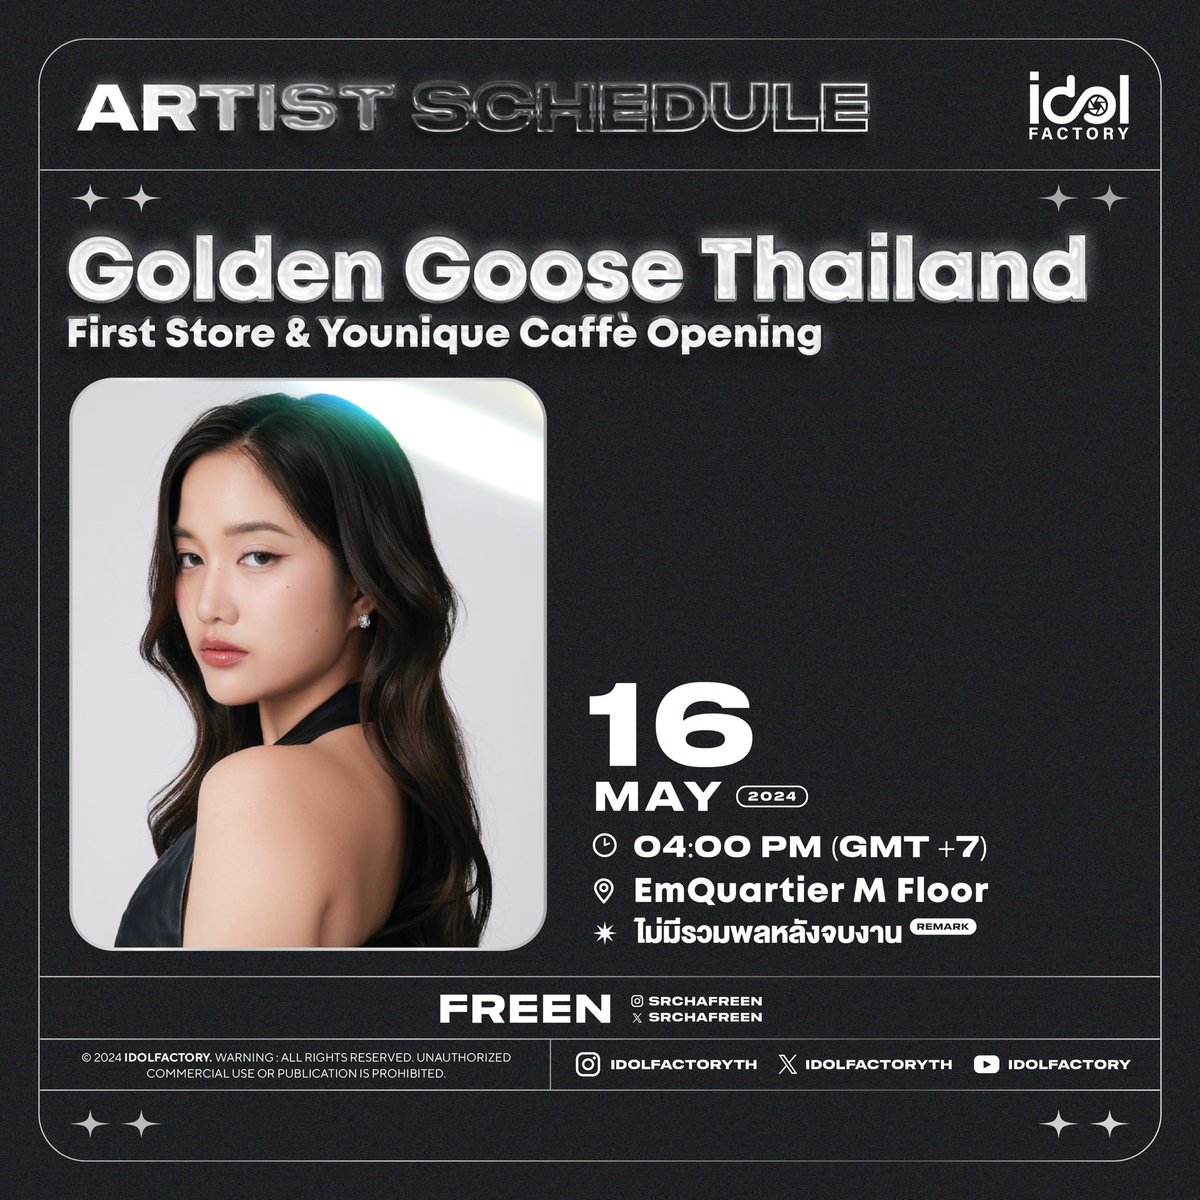 มาพบกับ ฟรีน ได้ที่งาน Golden Goose Thailand First Store & Younique Caffè Opening 🗓️ 16 พฤษภาคม 2567 ⏰ 4.00 PM 📍EmQuartier M Floor 📈 OPENING STORE WITH SAROCHA #️⃣#.GoldenGooseFREEN 📌Start Trending 3.30 PM ✨แฟนๆสามารถให้กำลังใจบริเวณรอบๆงานได้ ❌ไม่มีรวมพลหลังจบงาน…